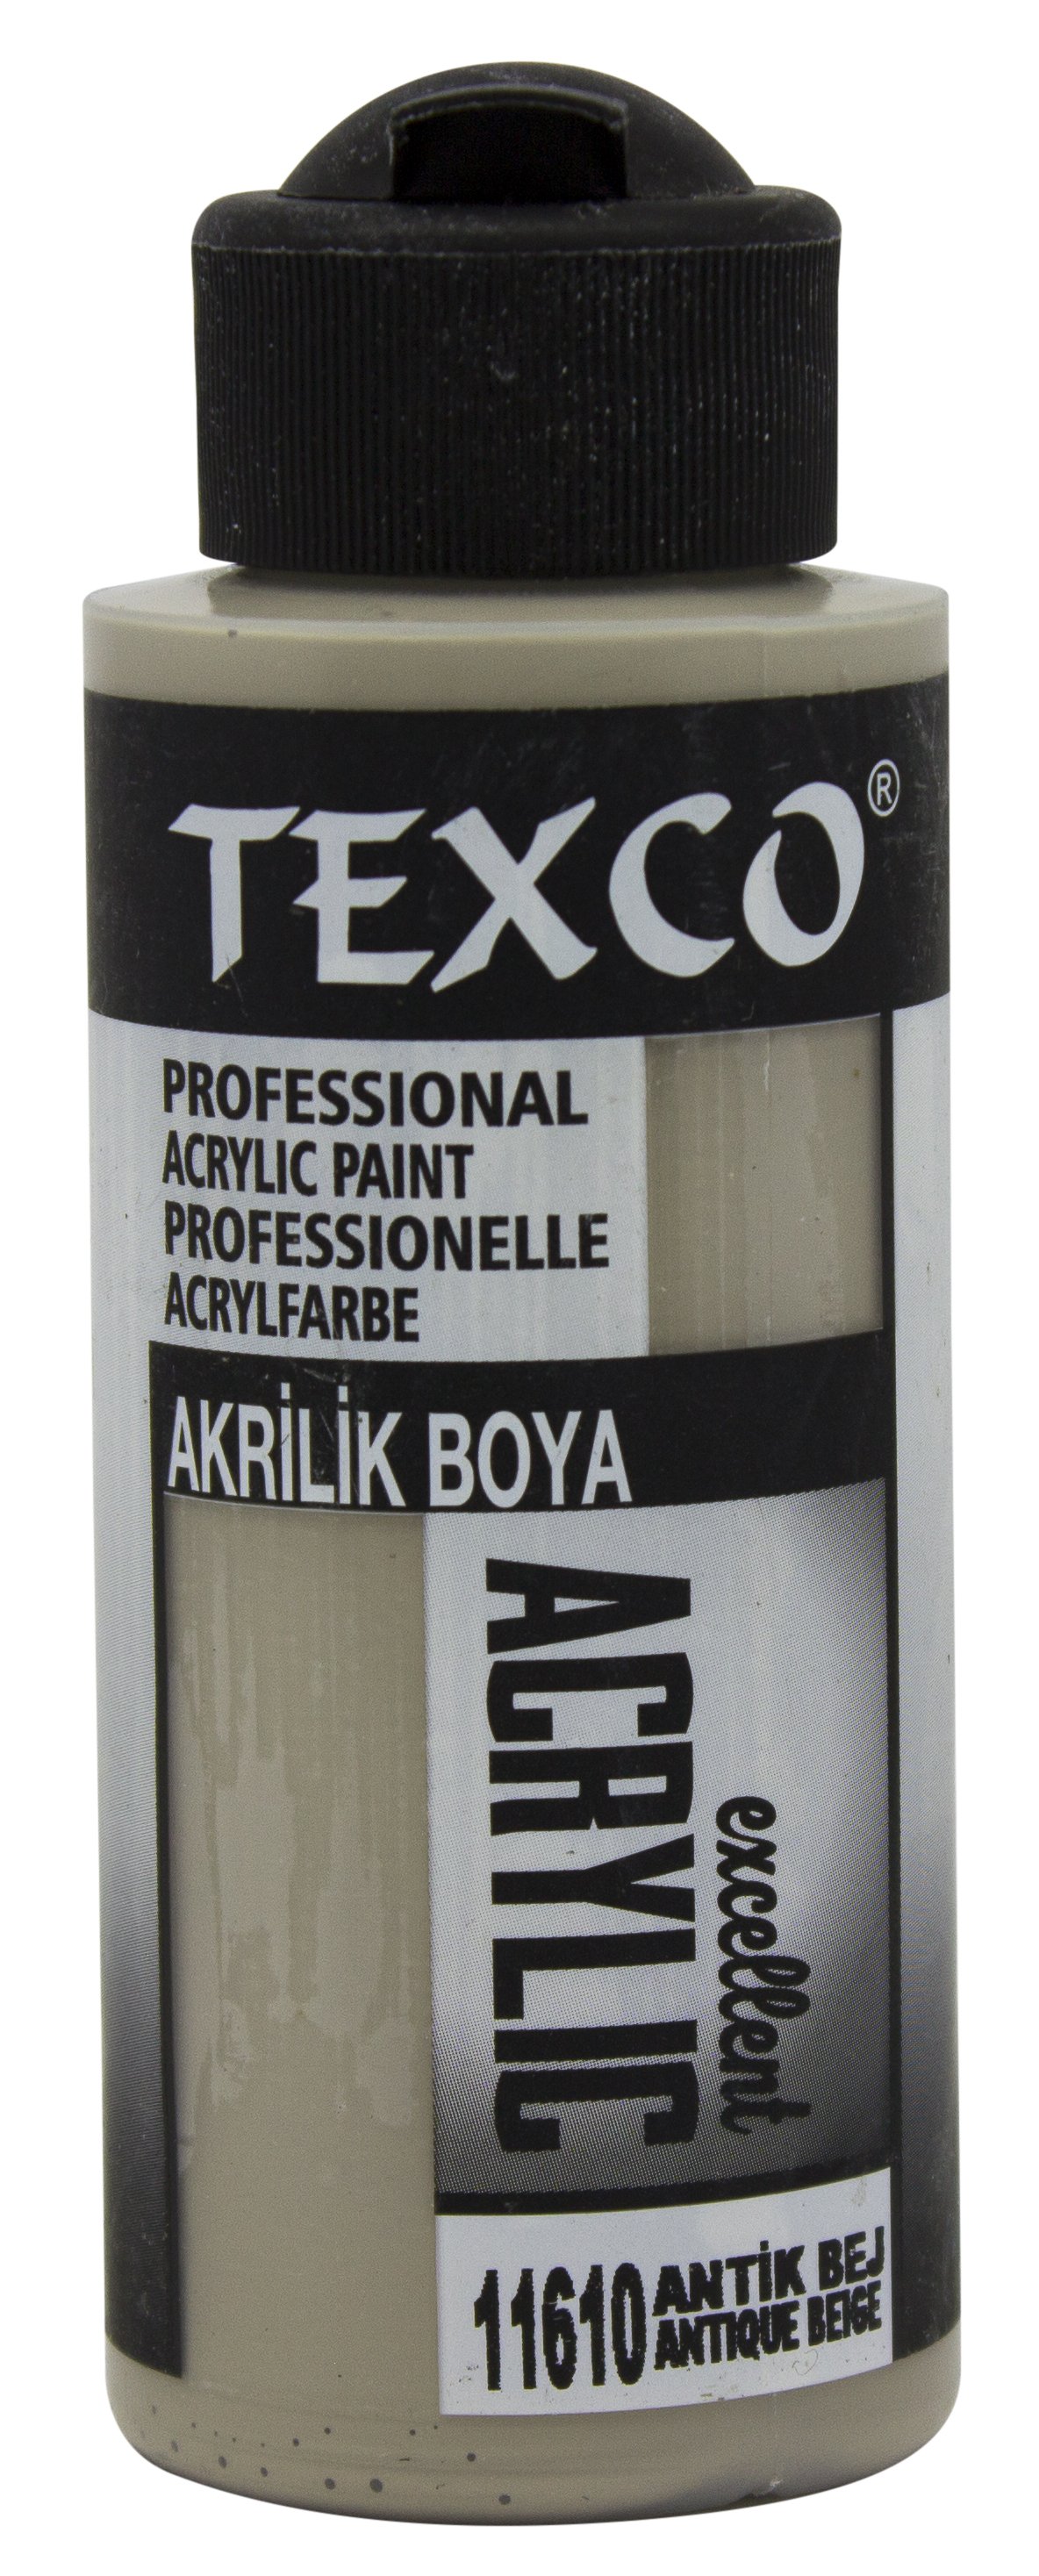 Texco Excellent Akrilik Boya 11610-Antik Bej 110 cc